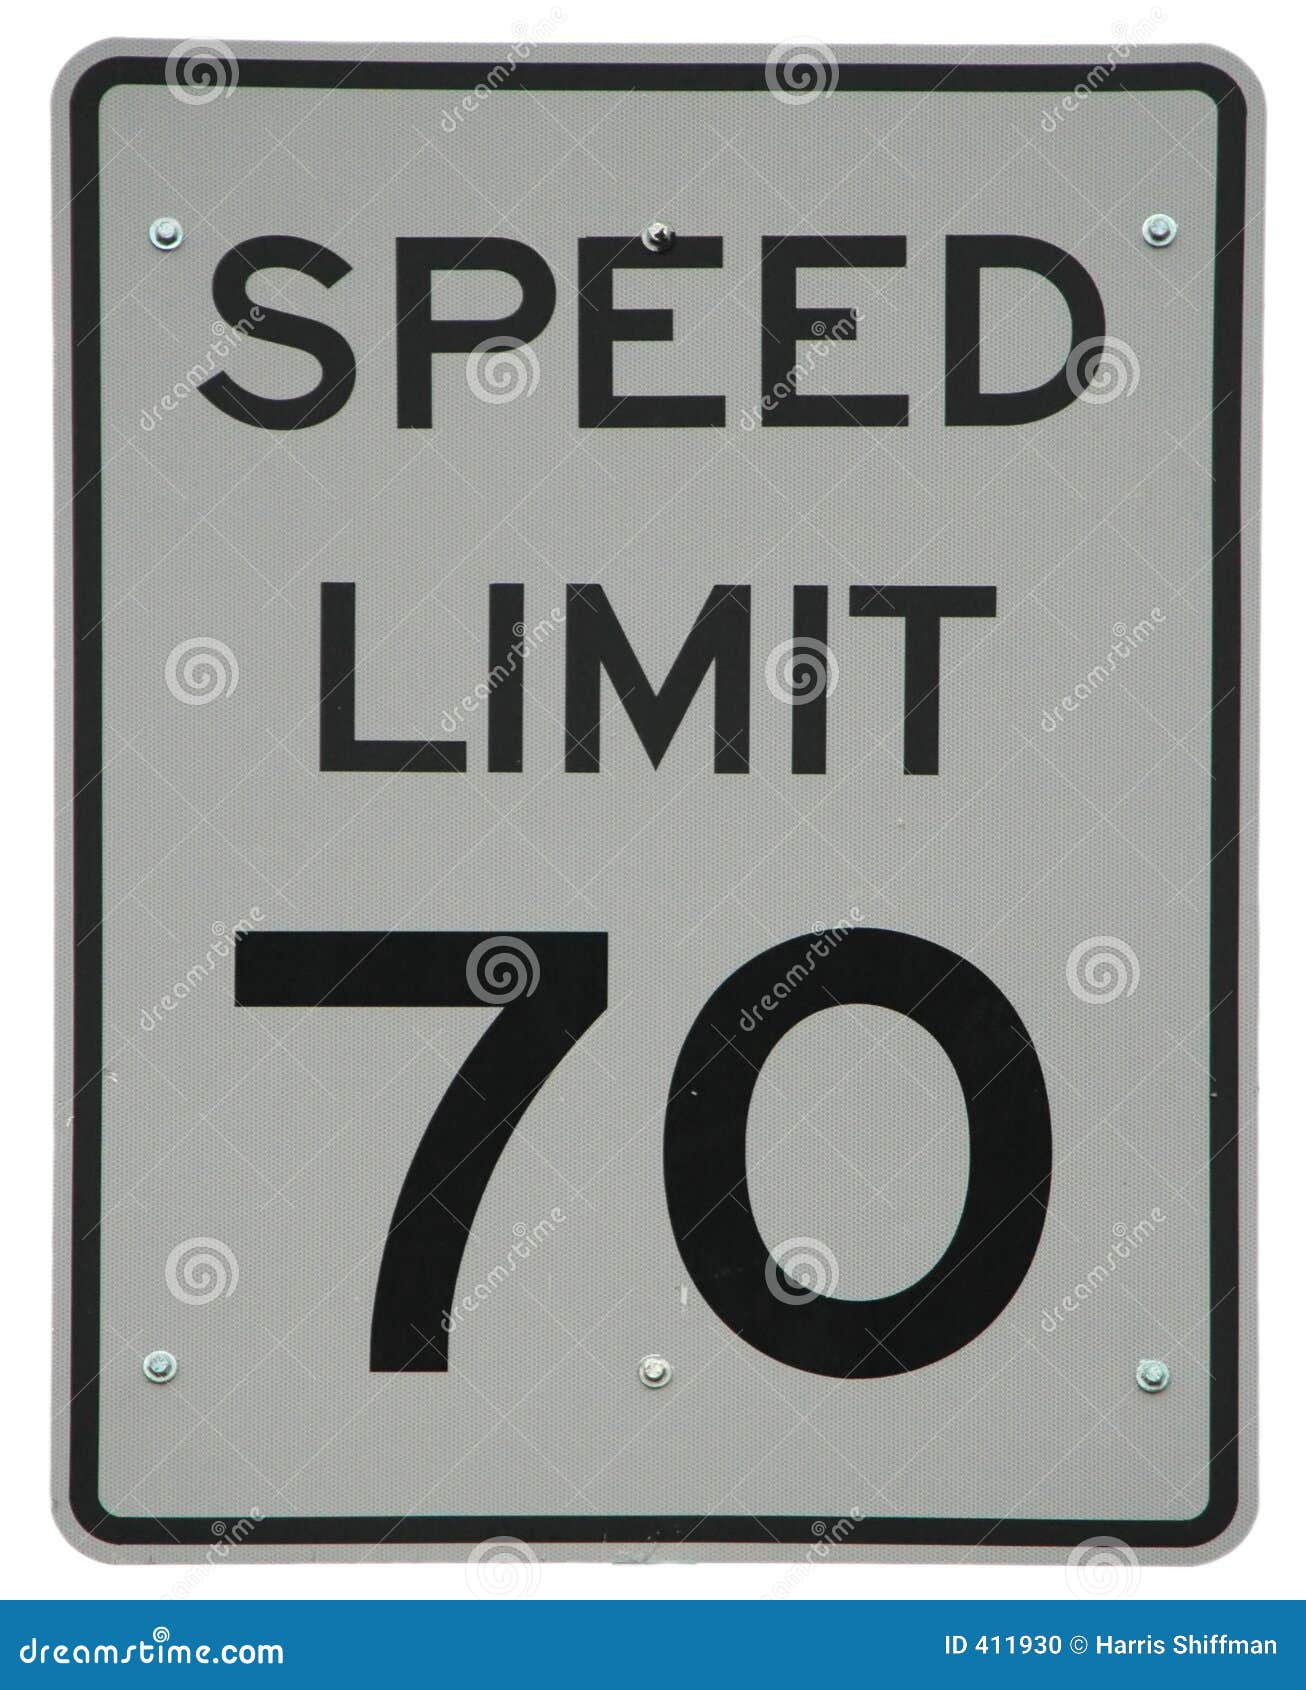 speed limit 70